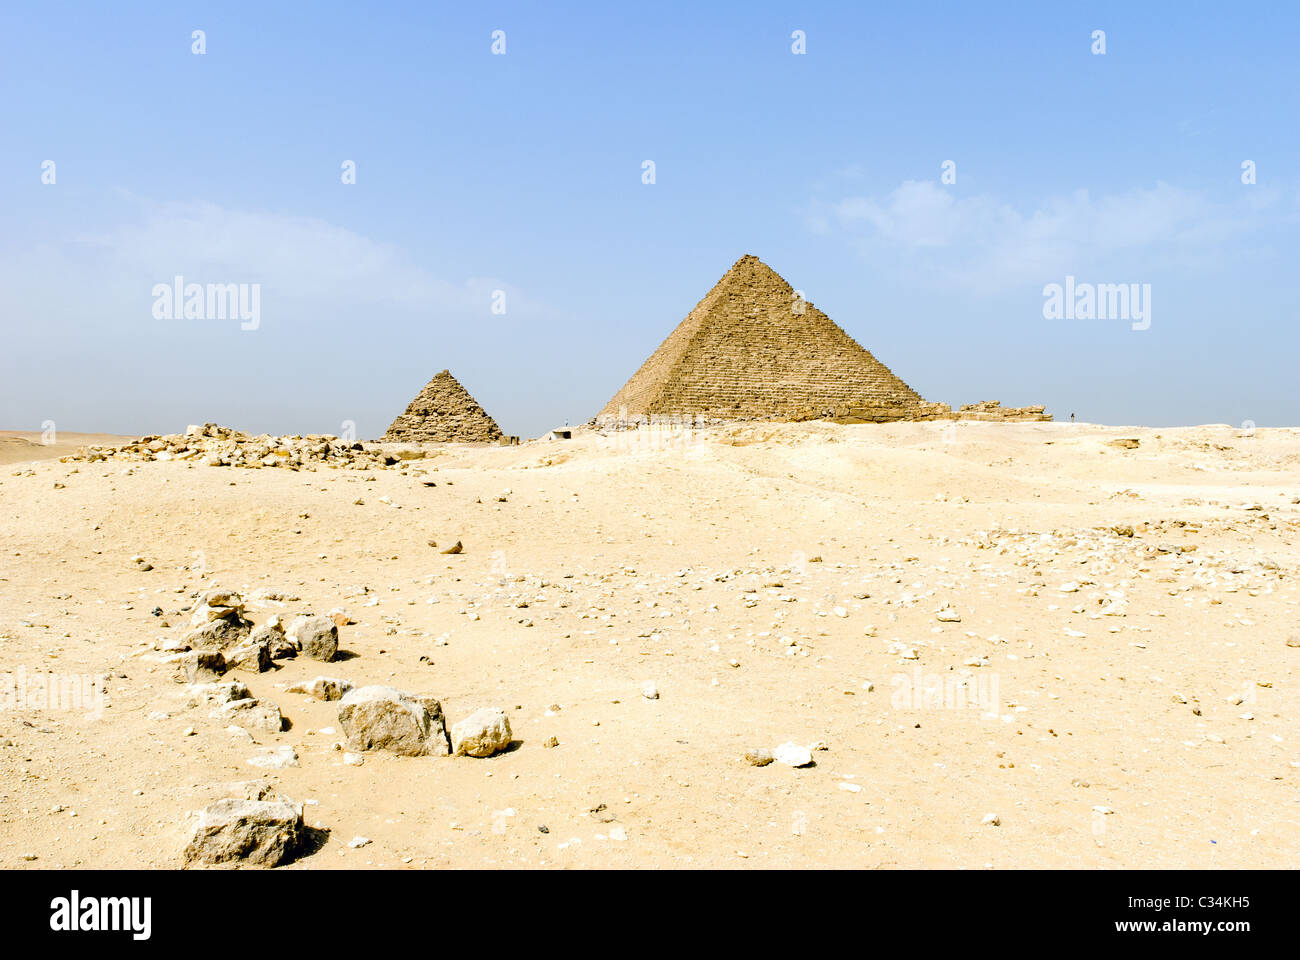 Pyramid of Menkaure - Giza necropolis, Lower Egypt Stock Photo